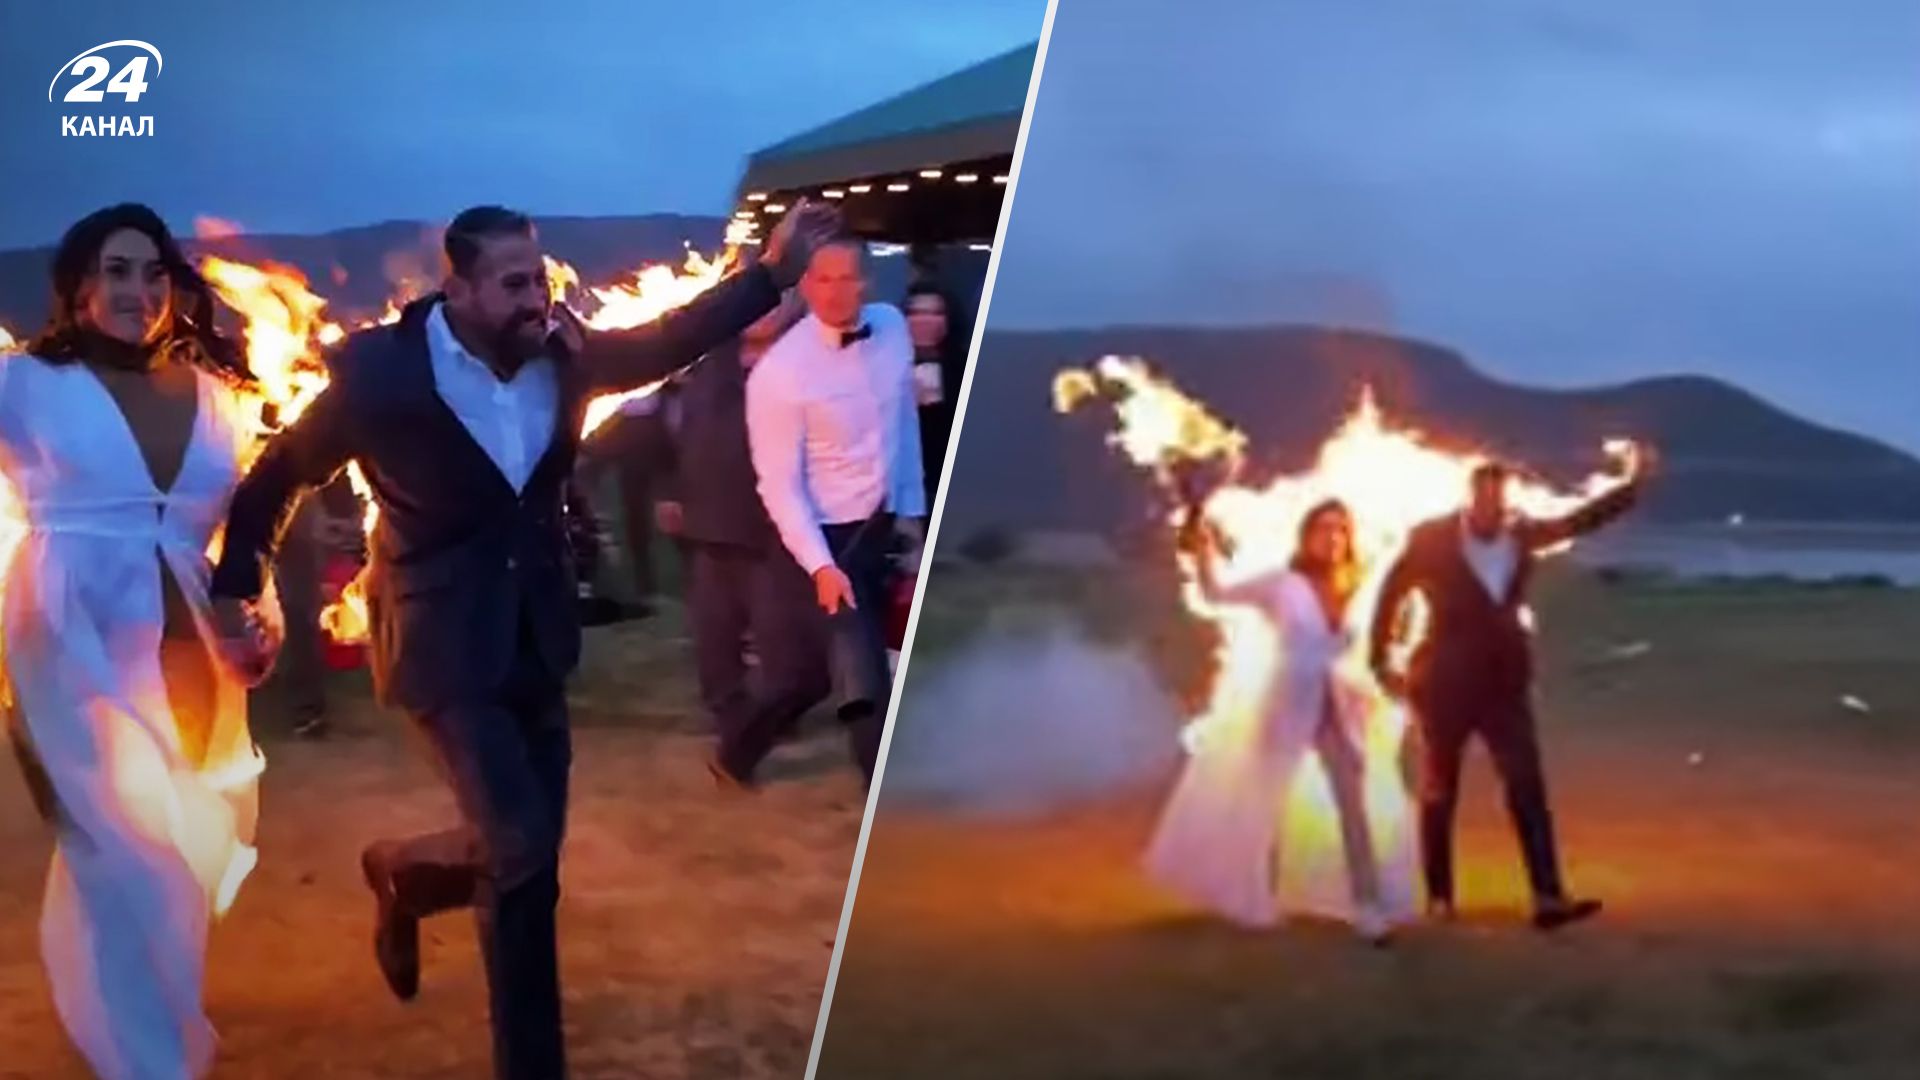 Каскадеры подожгли себя во время свадьбы - эпические детали